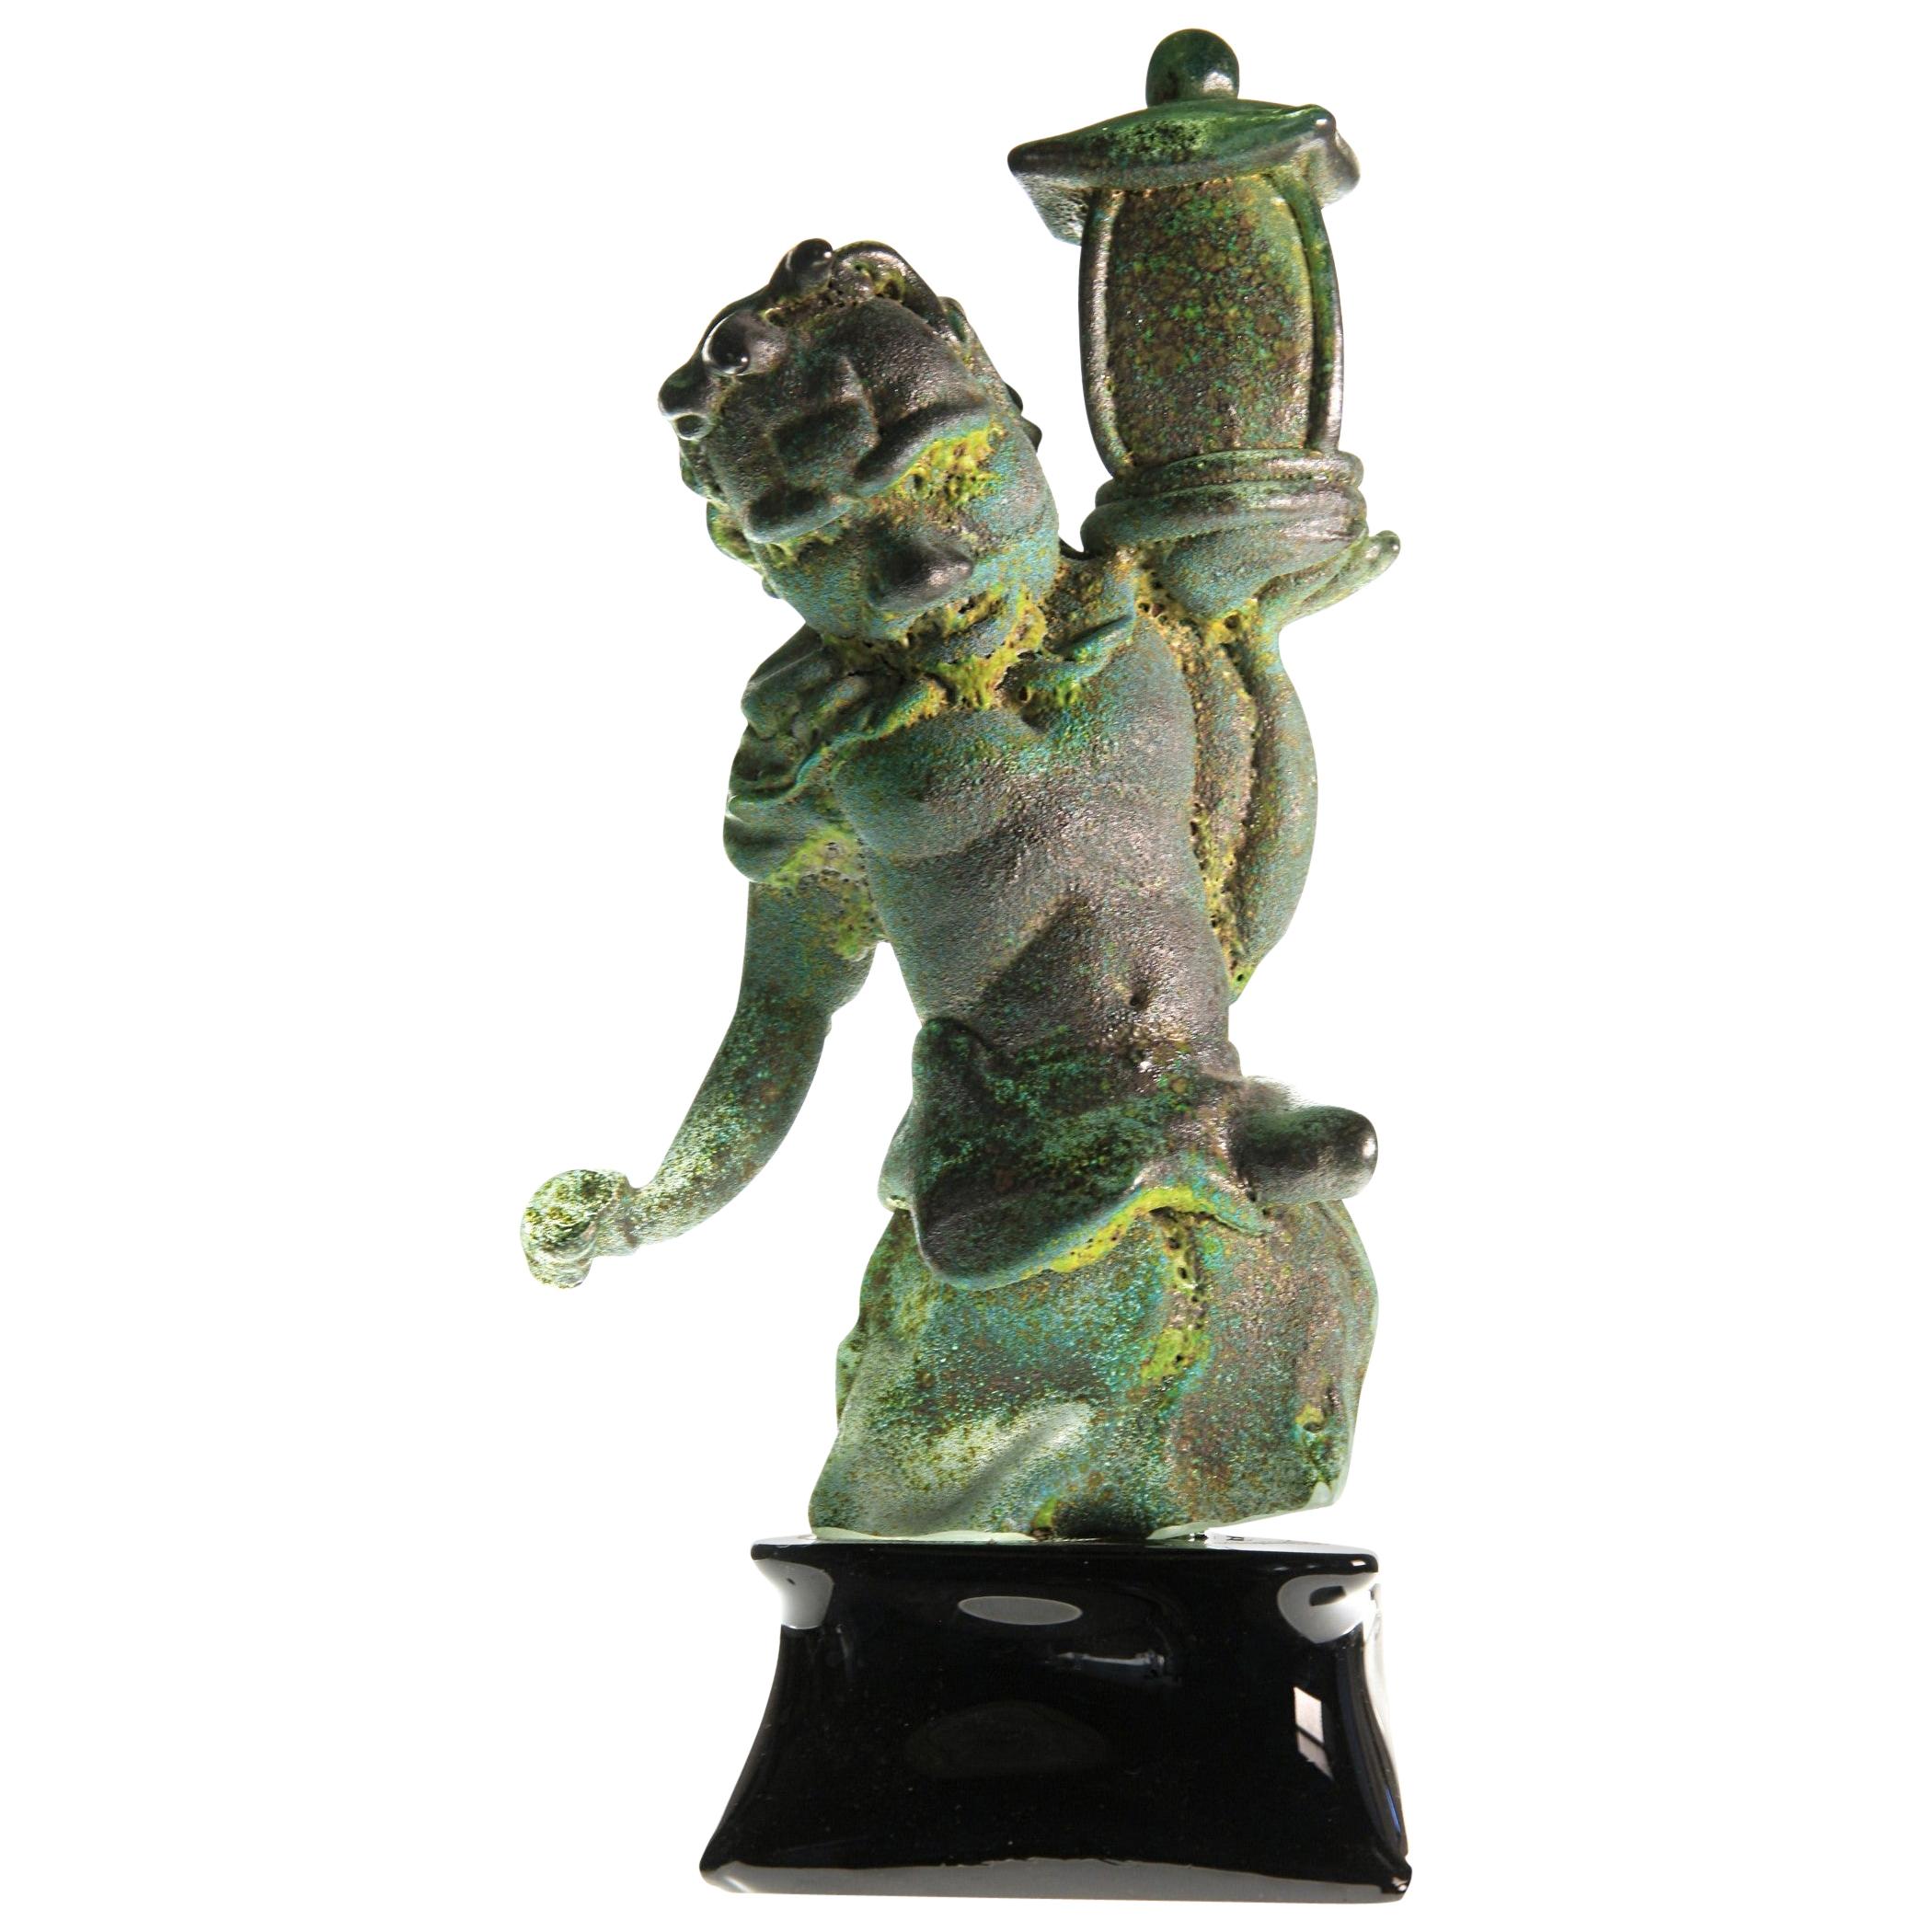 Tentoki, Massiccio Murano Glass Sculpture, Bronze Verdigris and Sulfur Texture